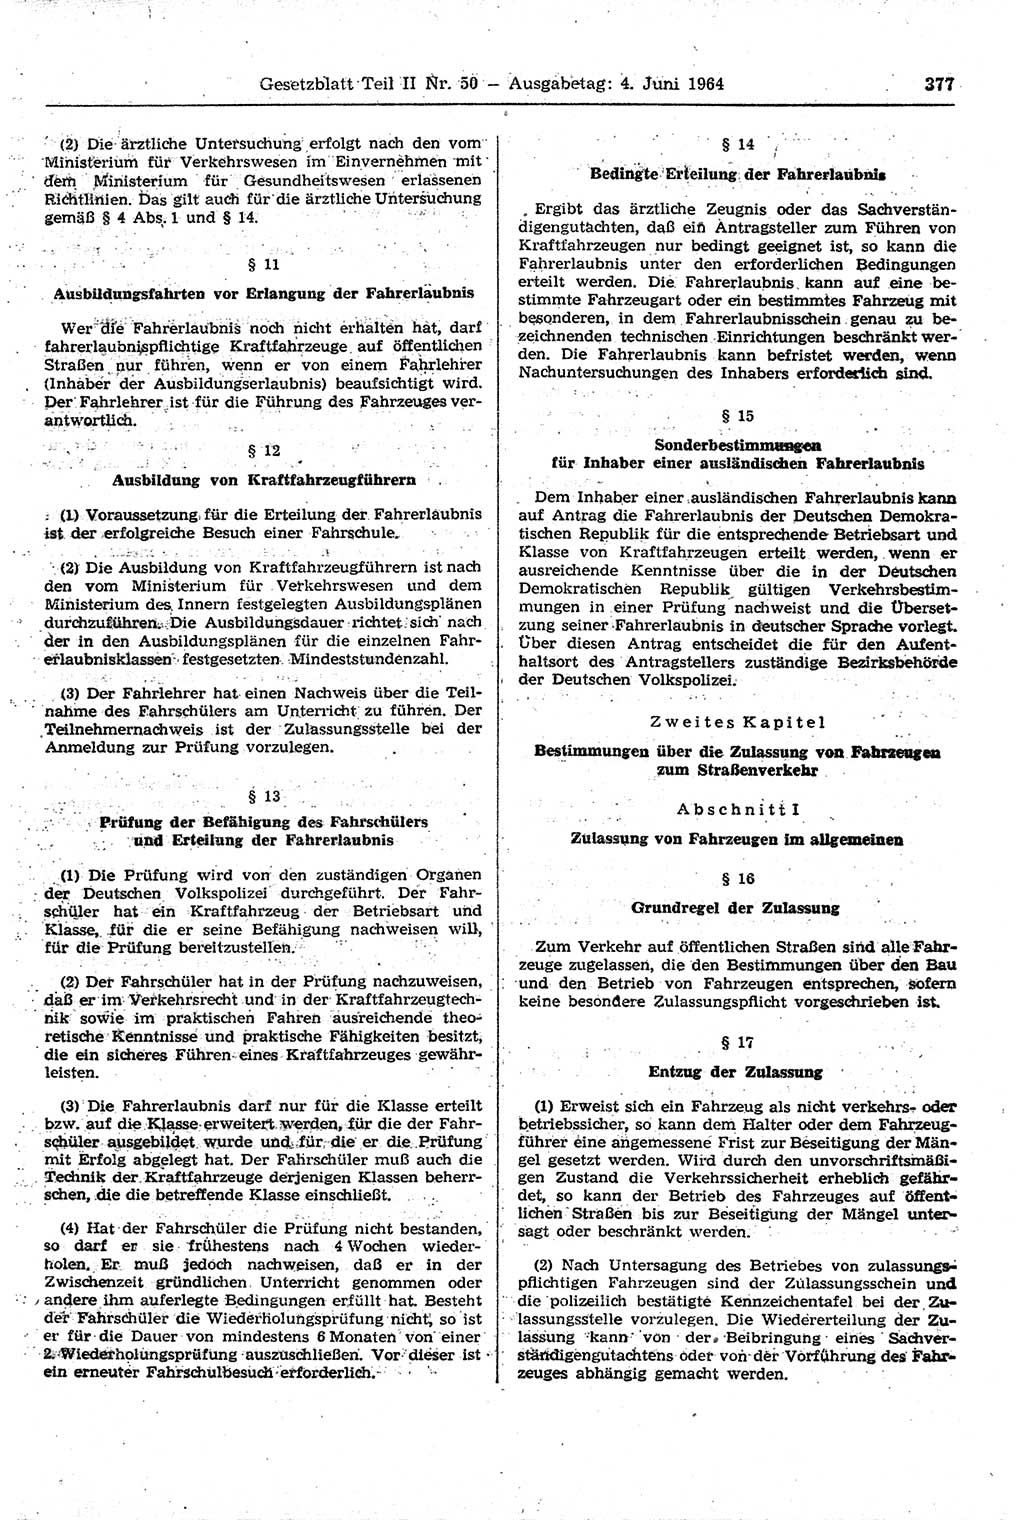 Gesetzblatt (GBl.) der Deutschen Demokratischen Republik (DDR) Teil ⅠⅠ 1964, Seite 377 (GBl. DDR ⅠⅠ 1964, S. 377)